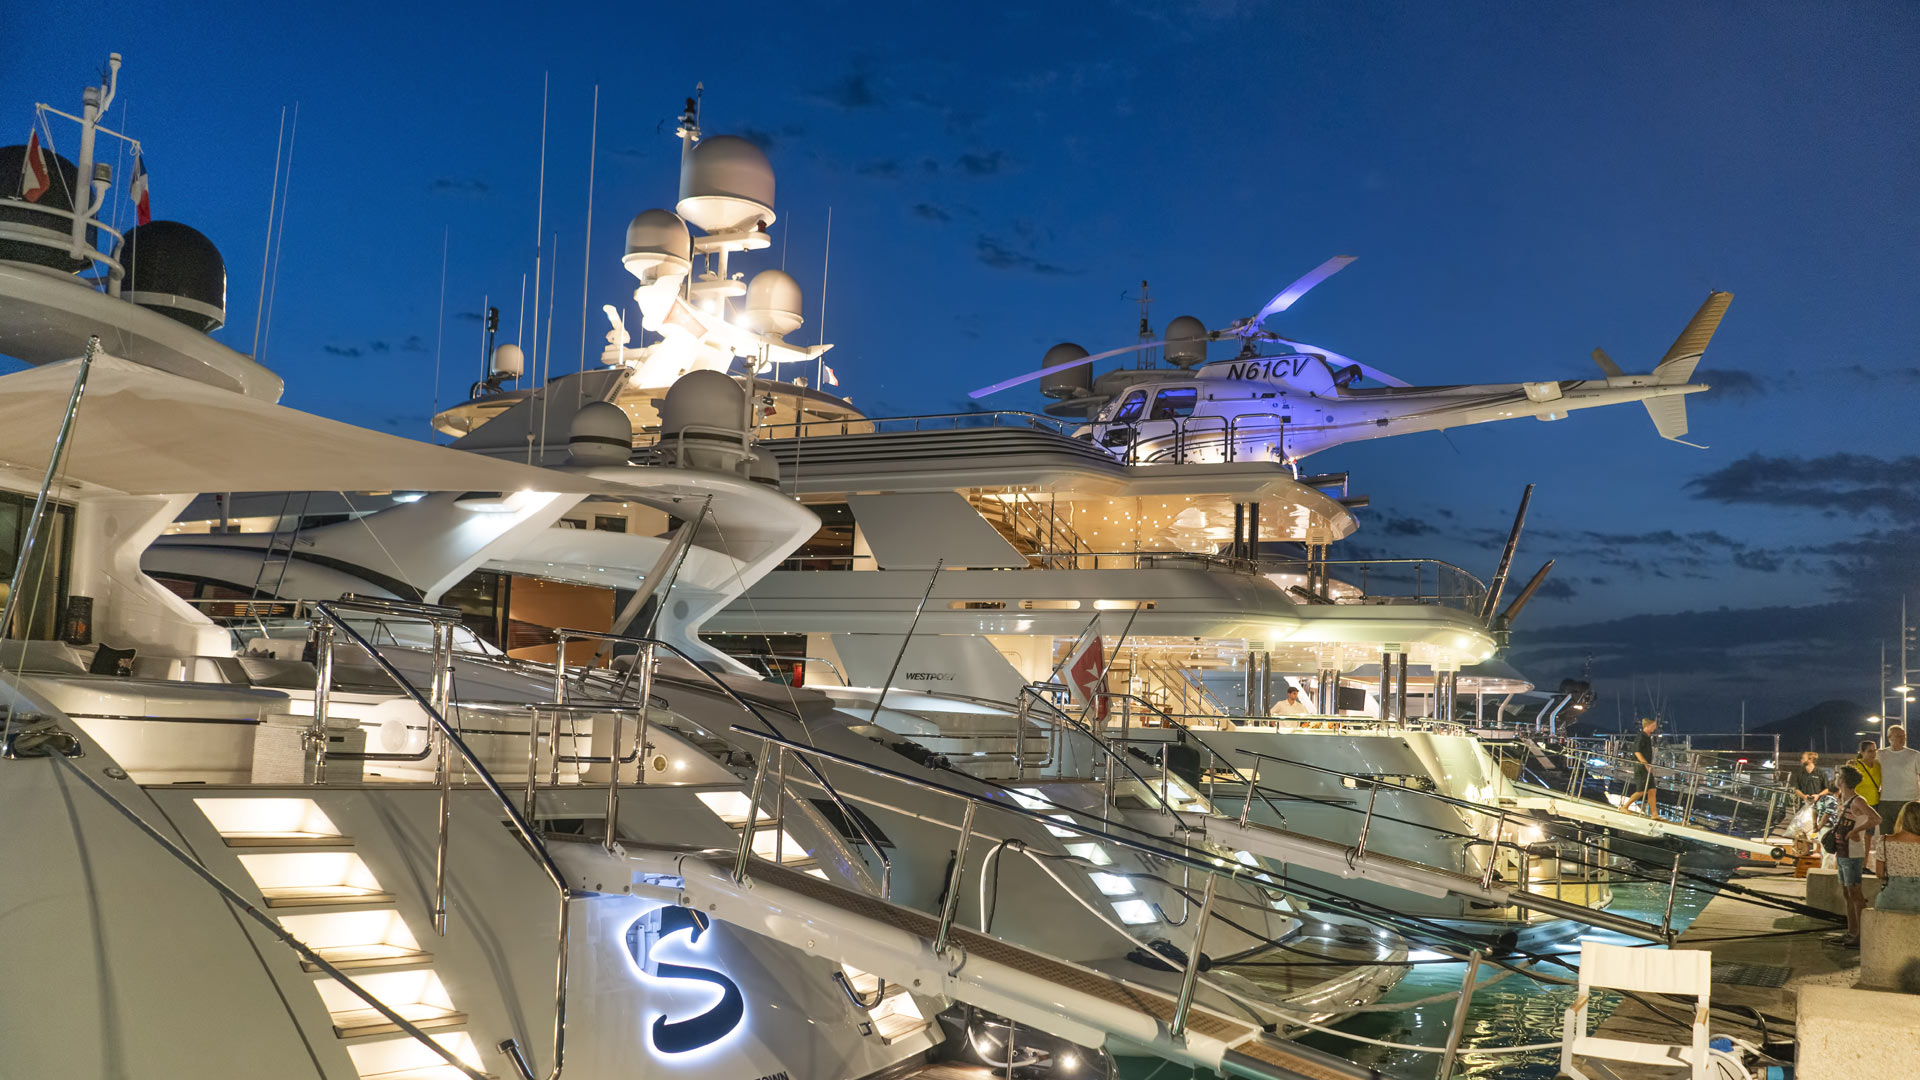 Luxus-Superjachten liegen im Hafen von Saint Tropez. | picture alliance / Global Travel